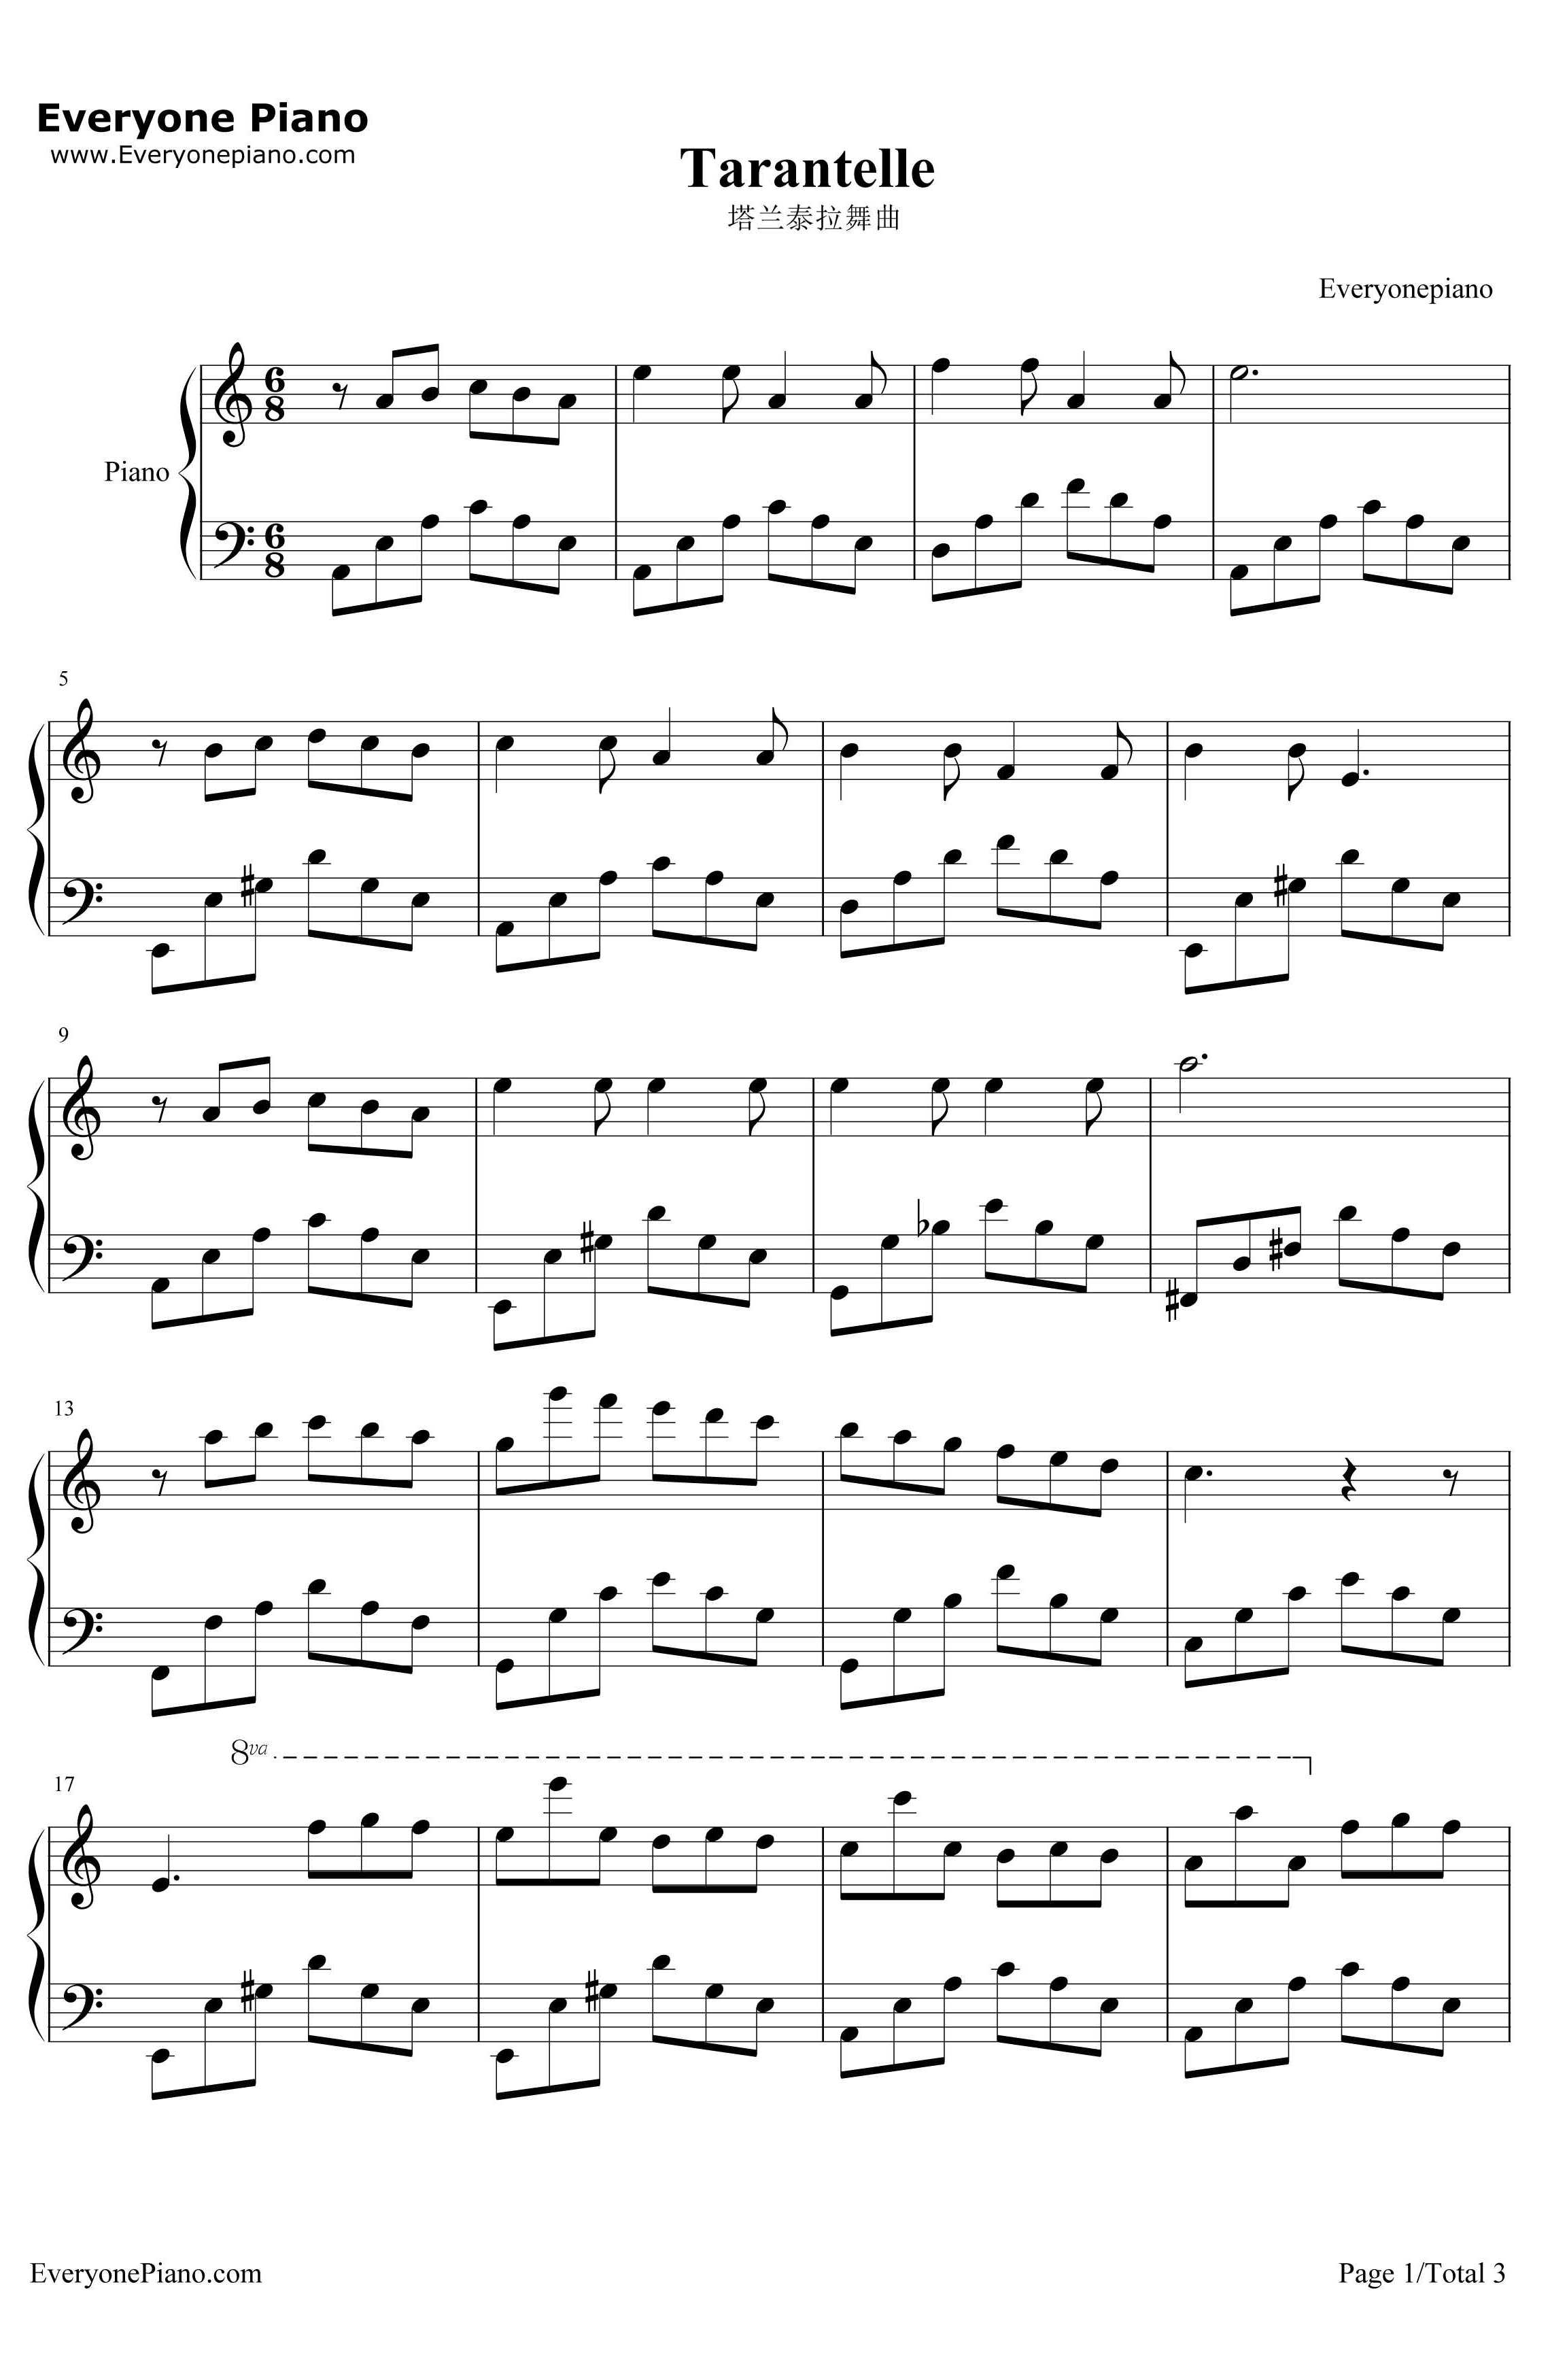 塔兰泰拉舞曲钢琴谱-皮埃松卡1